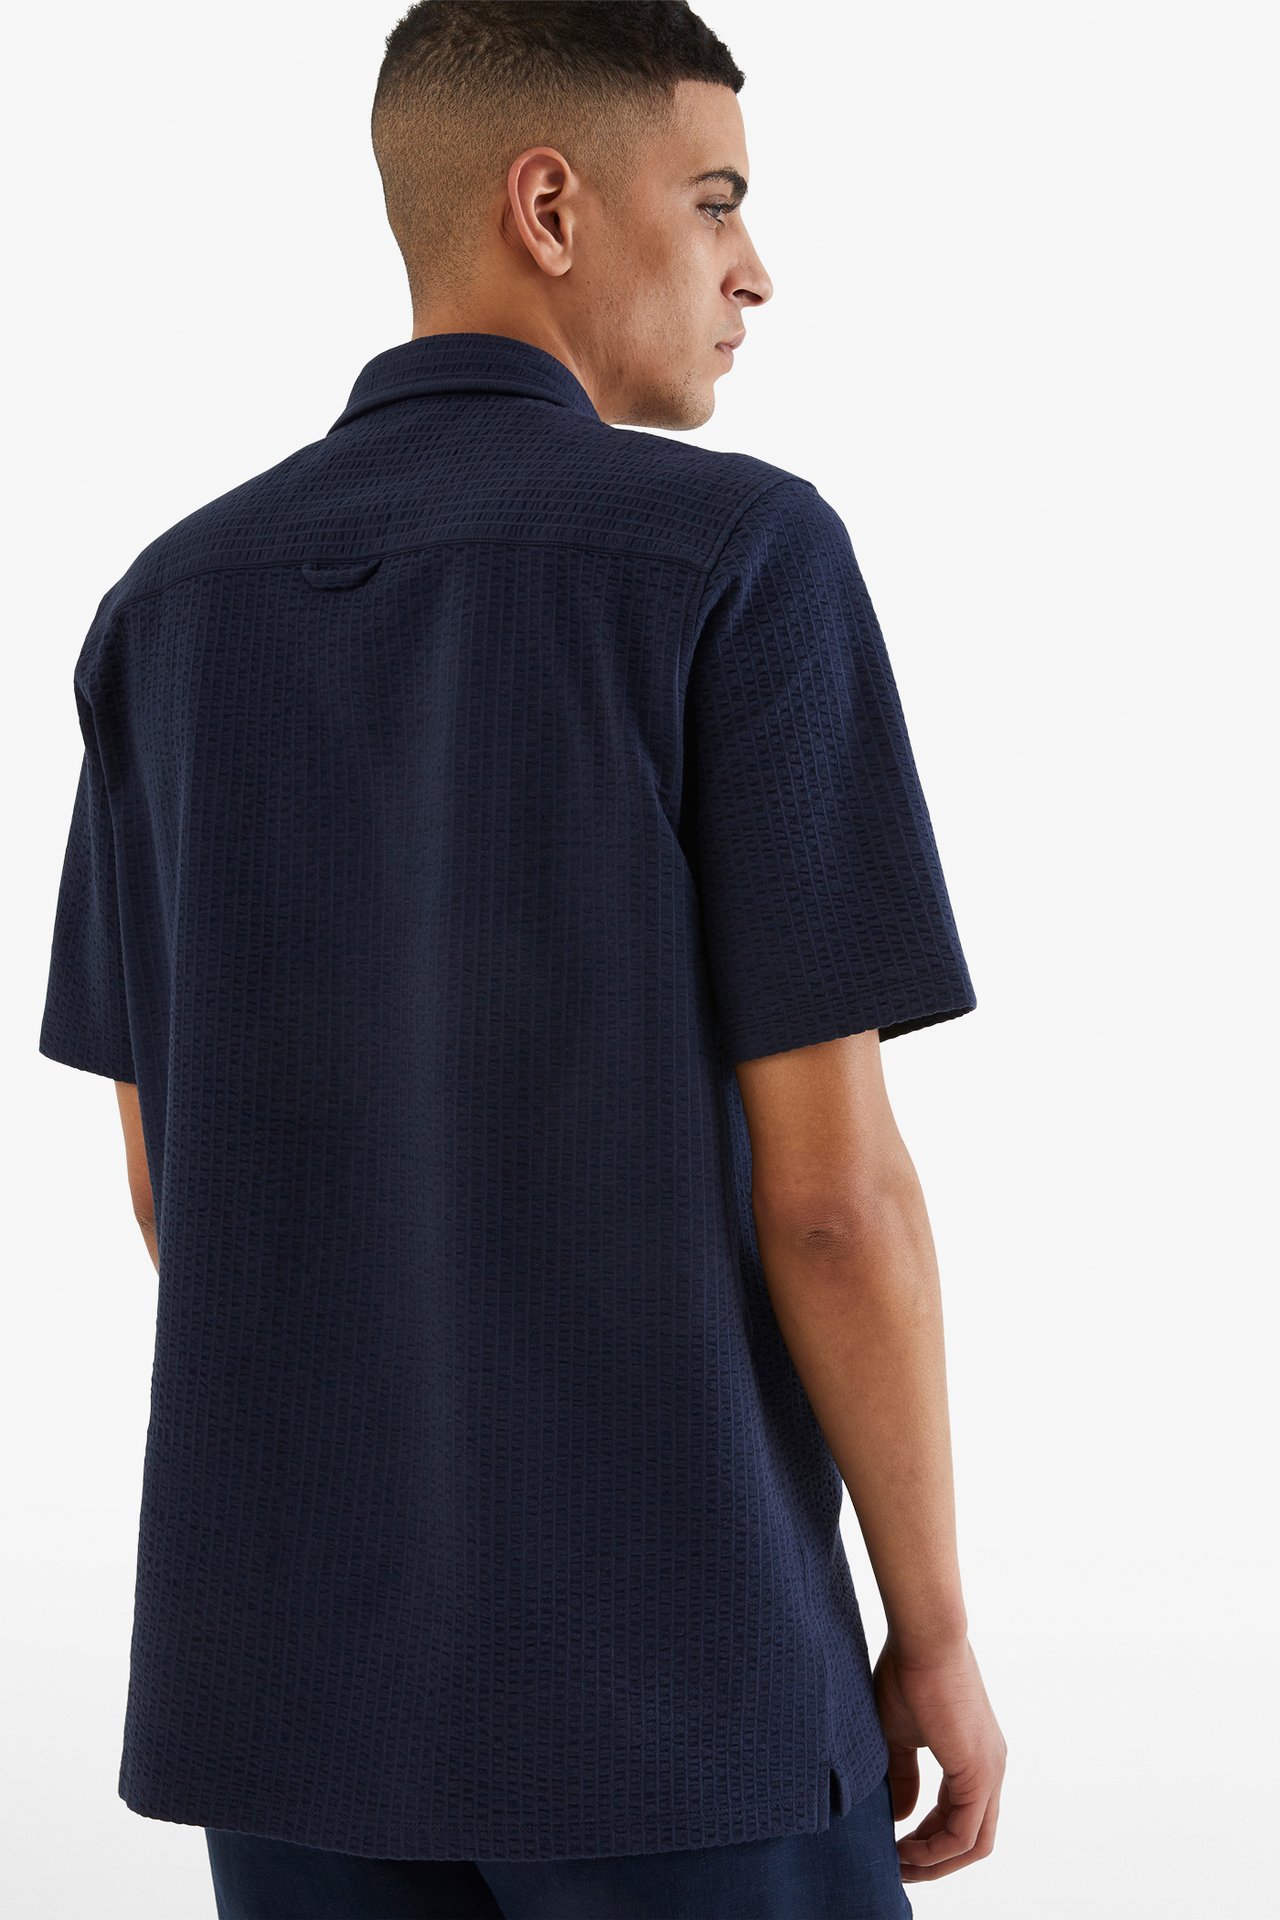 Tennisskjorte i trikot - Mørkeblå - 189cm / Storlek: M - 4